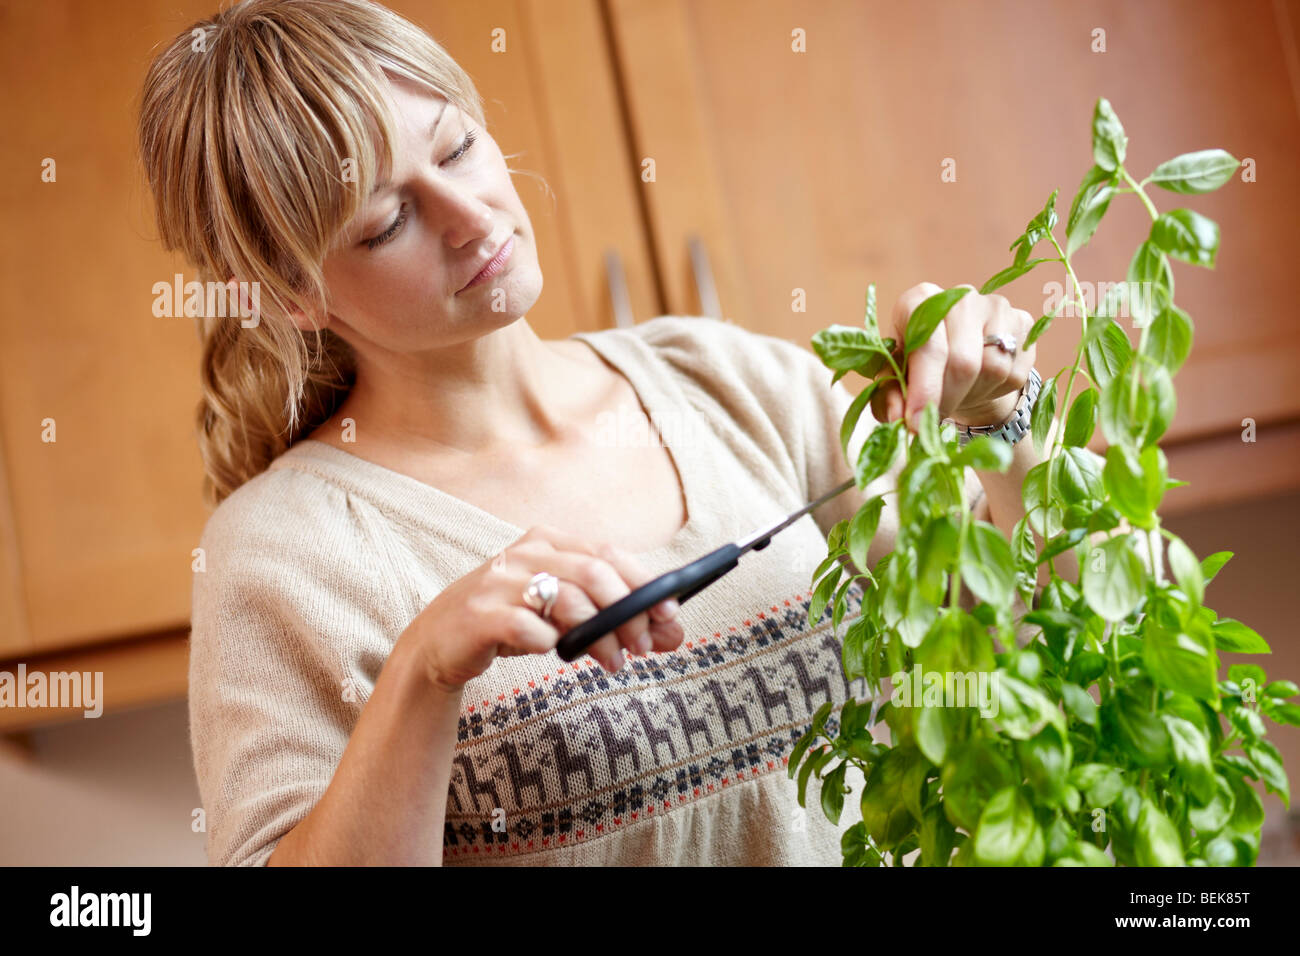 Woman cutting basil plant Stock Photo